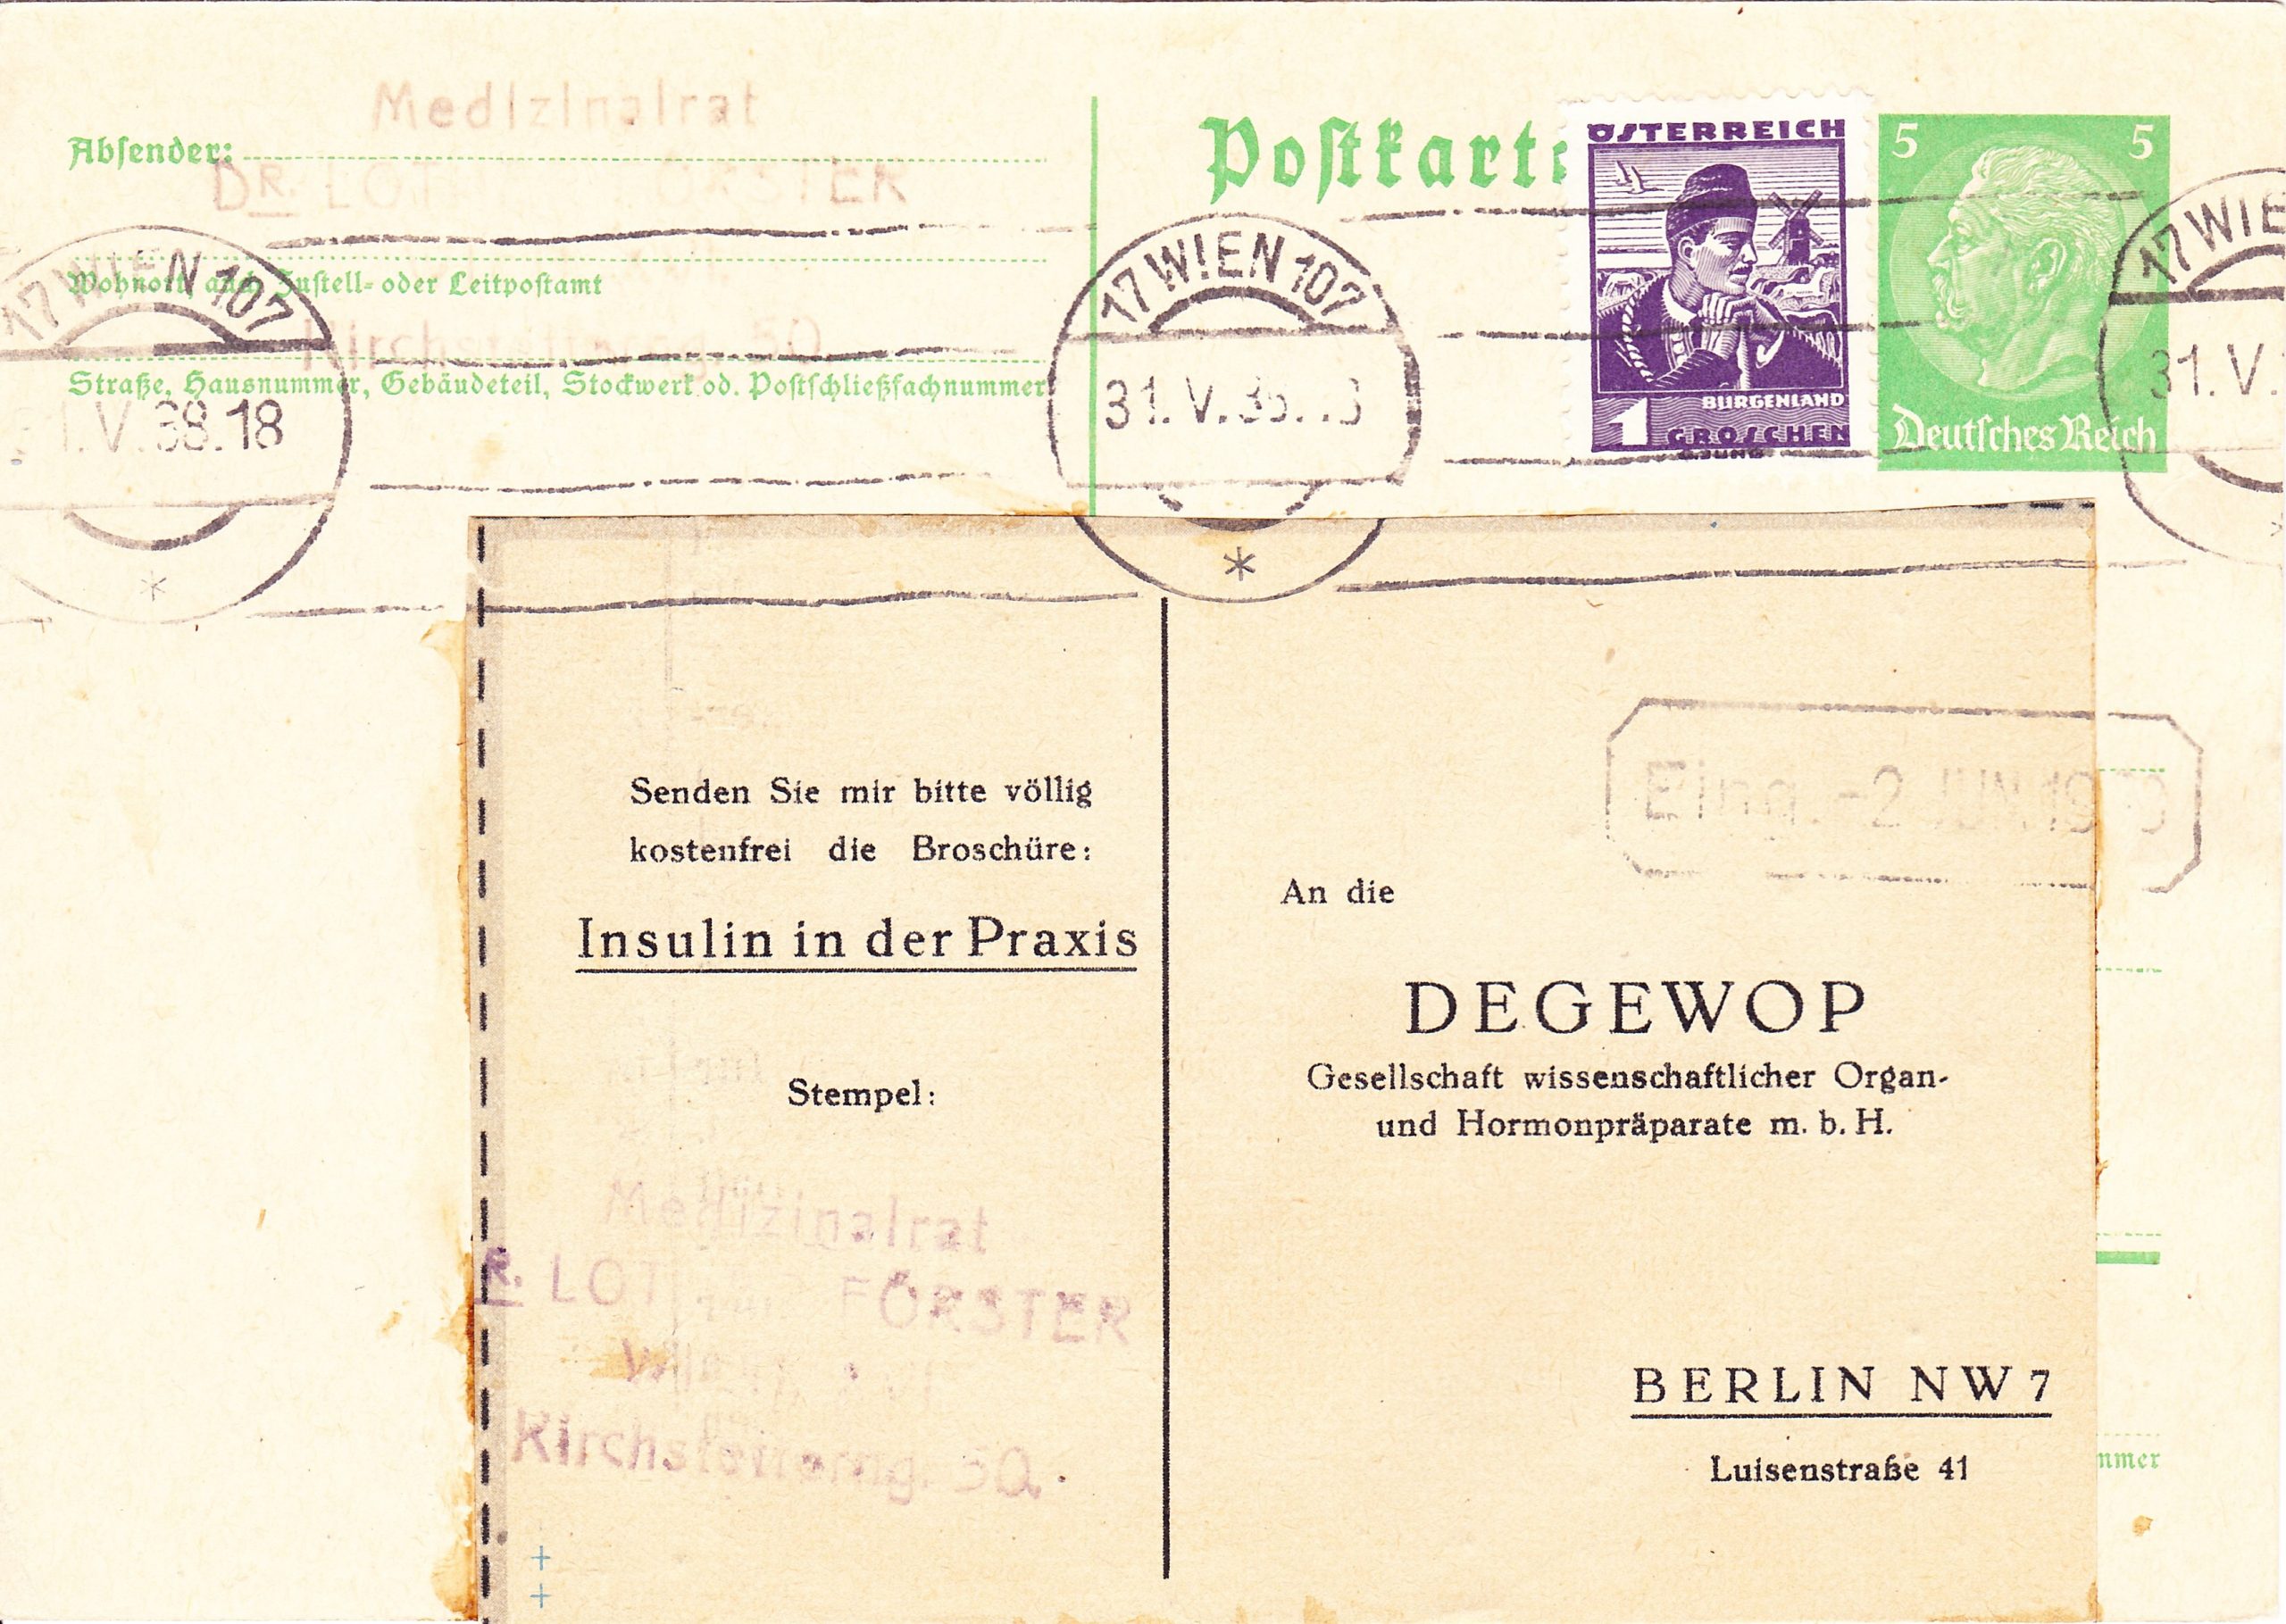 Postkarte, Österreich, 1938, an die Firma Degewop